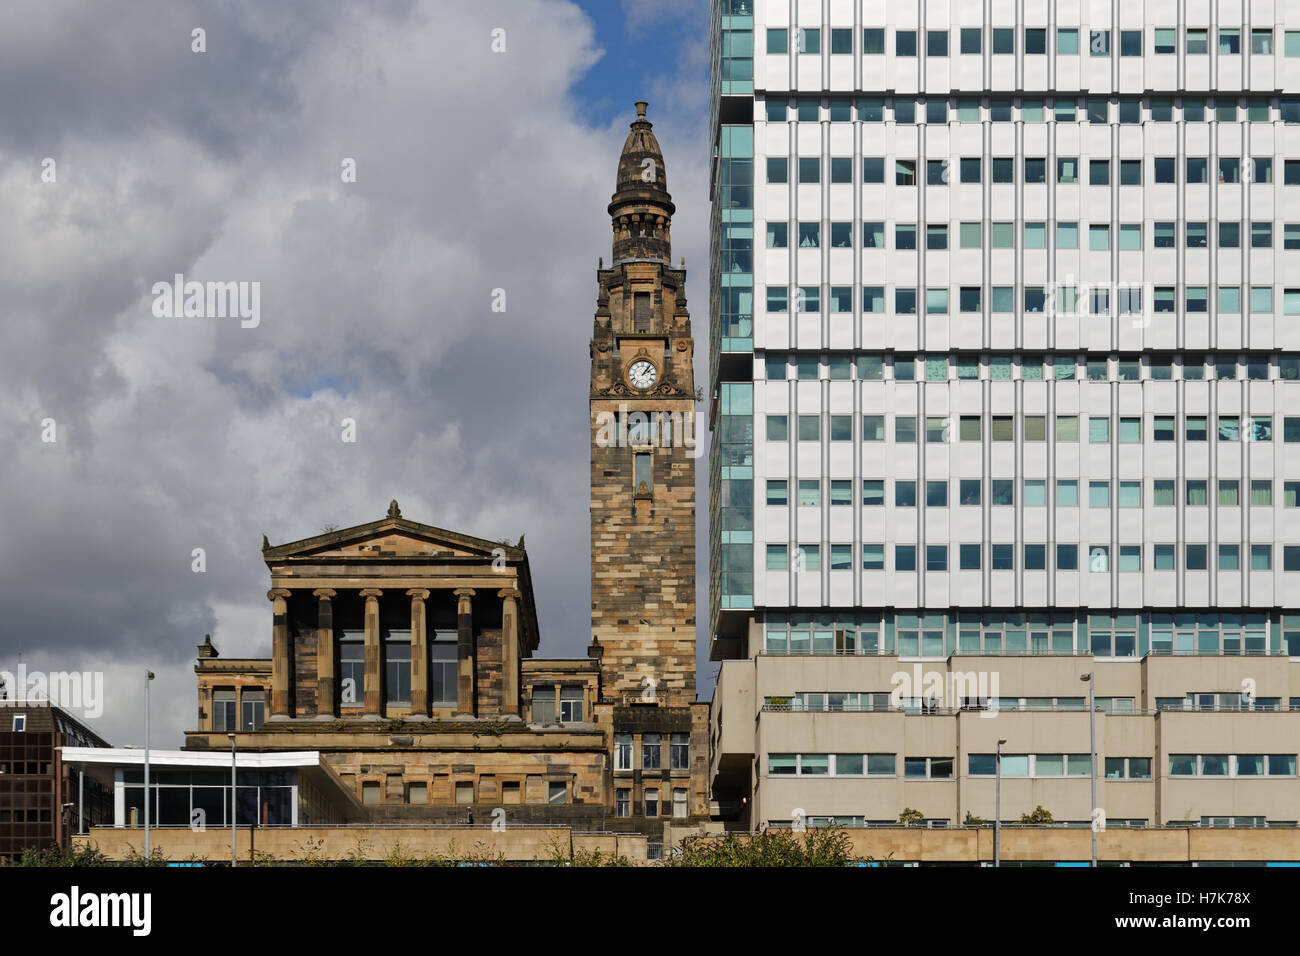 Stadtbild Stile Glasgow kontrastierenden Gebäude in abgeflachten Perspektiven Stockfoto